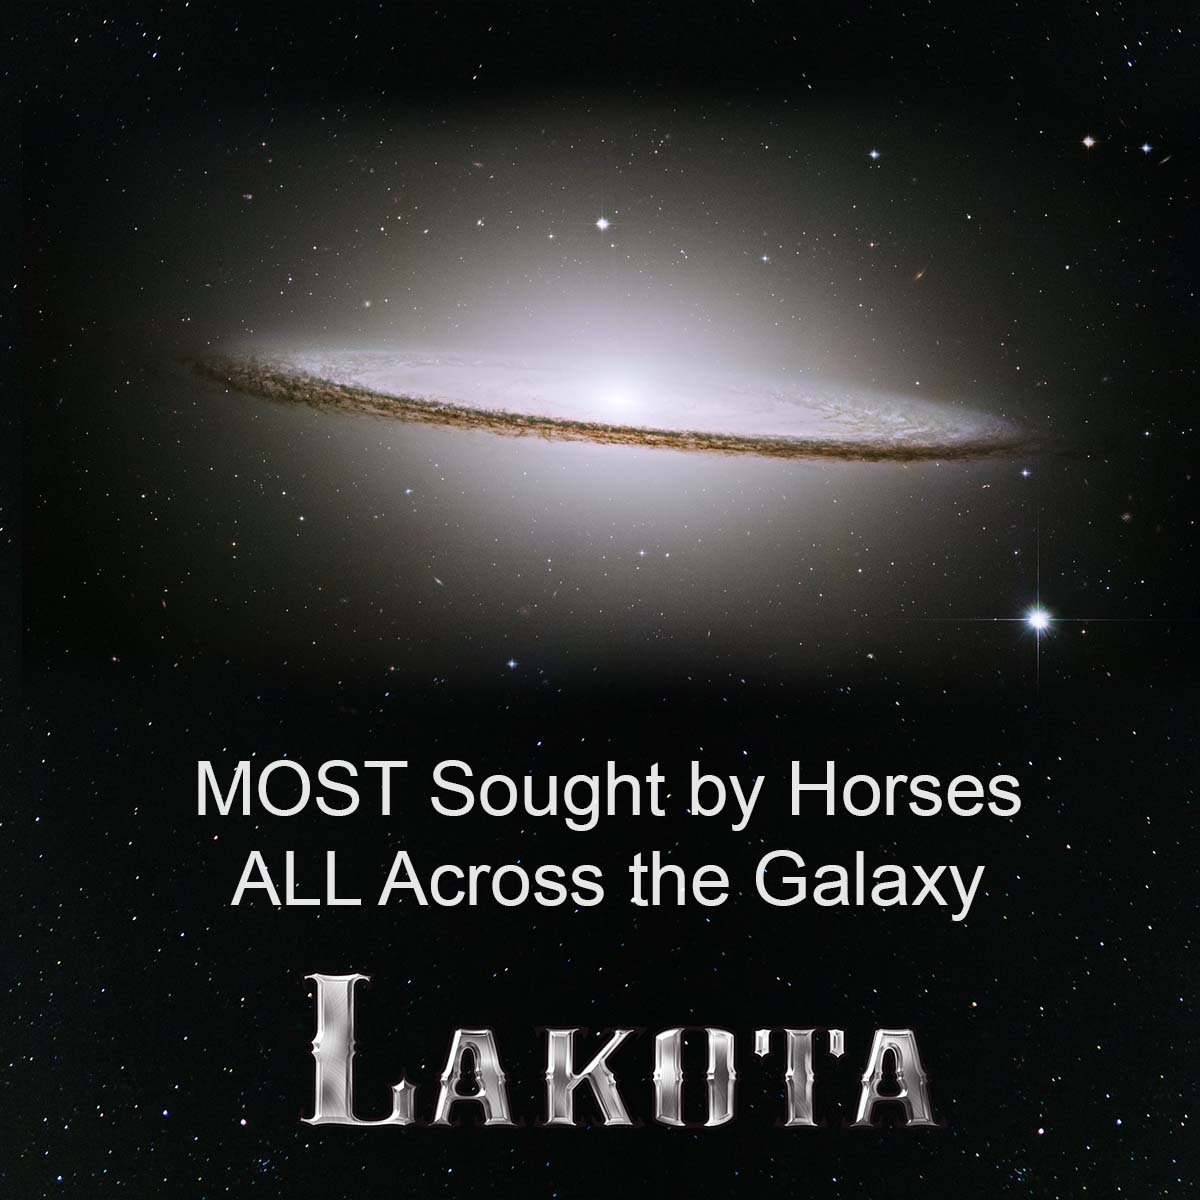 Lakota Star Wars Image